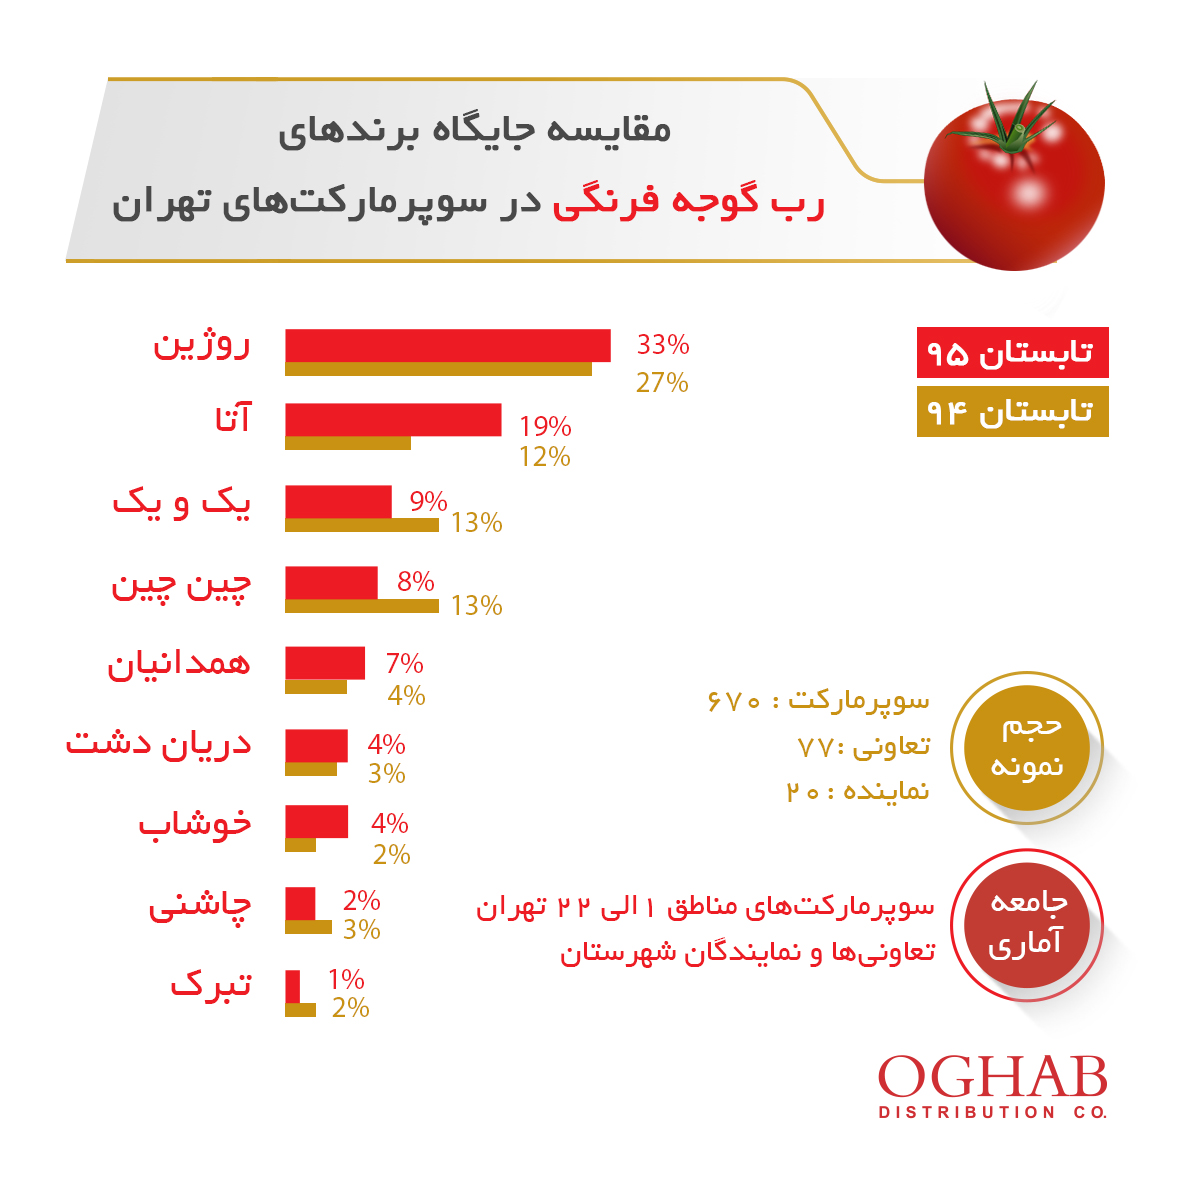 بررسی جایگاه برند برای برندهای رب گوجه فرنگی در بازار تهران